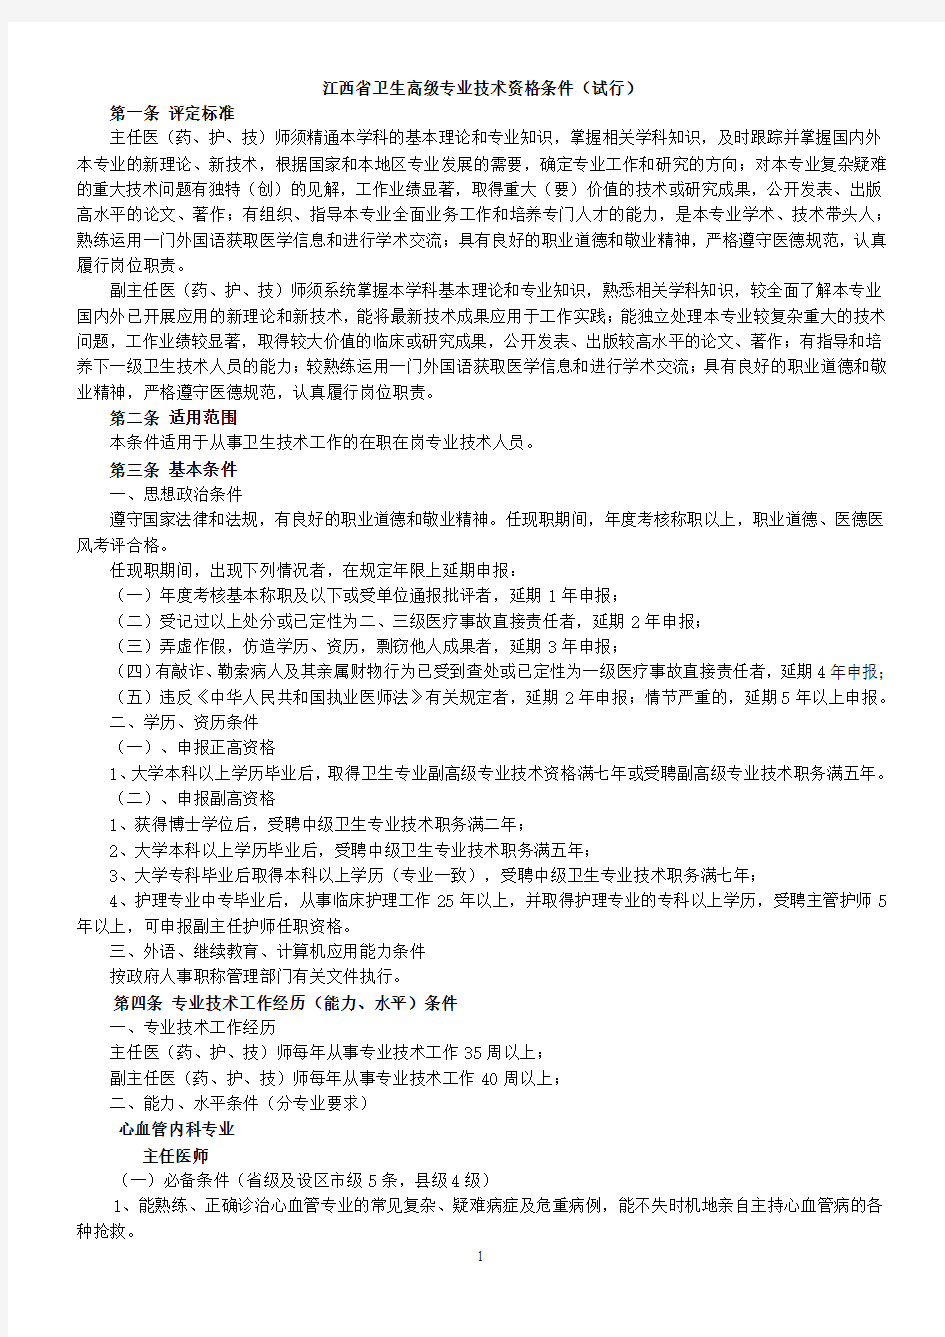 江西省卫生高级专业技术资格条件(试行)